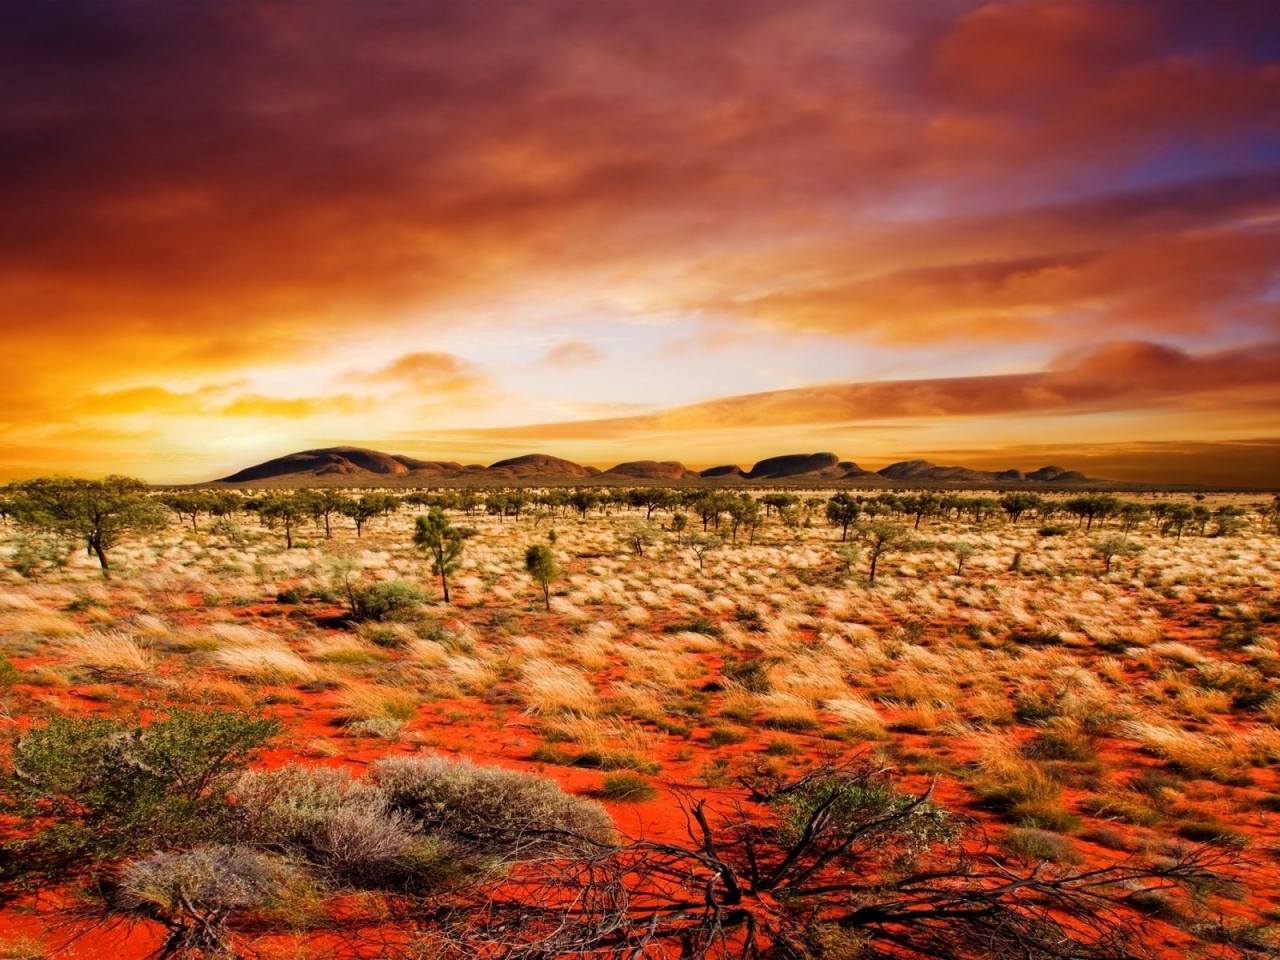 Desert Vegetation for 1280 x 960 resolution